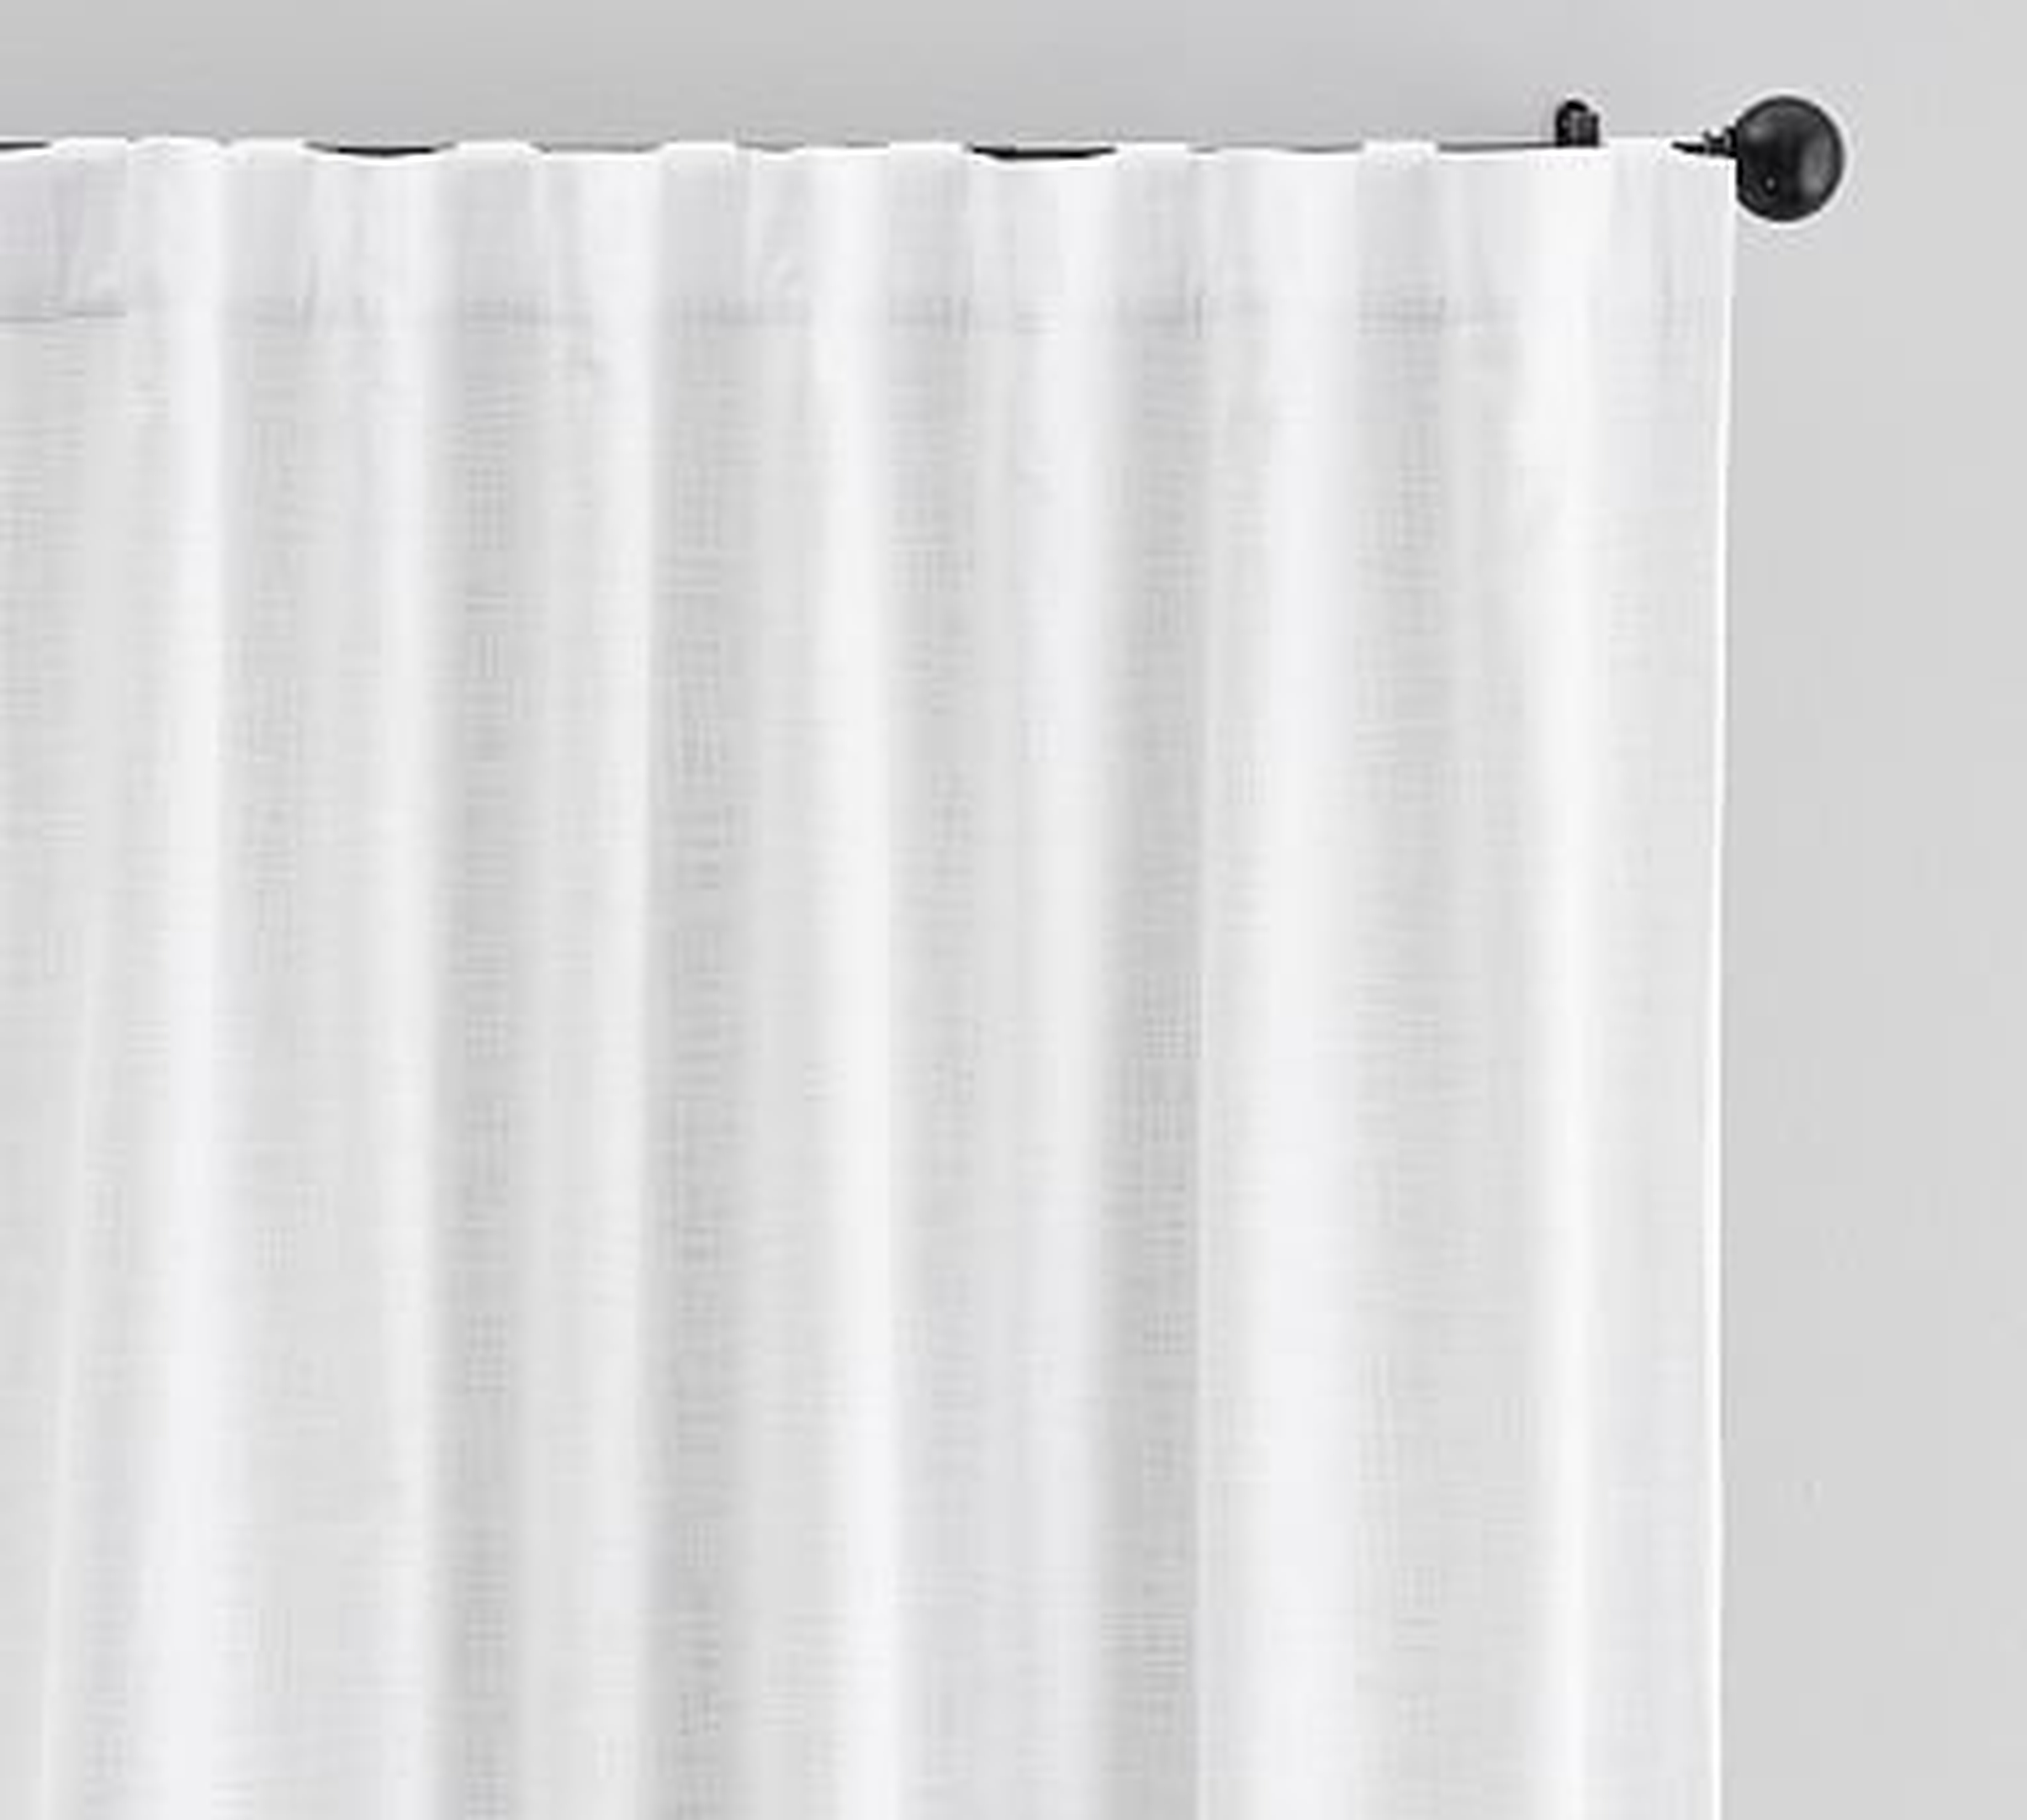 Seaton Textured Cotton Blackout Curtain, 50 x 108", White - Pottery Barn